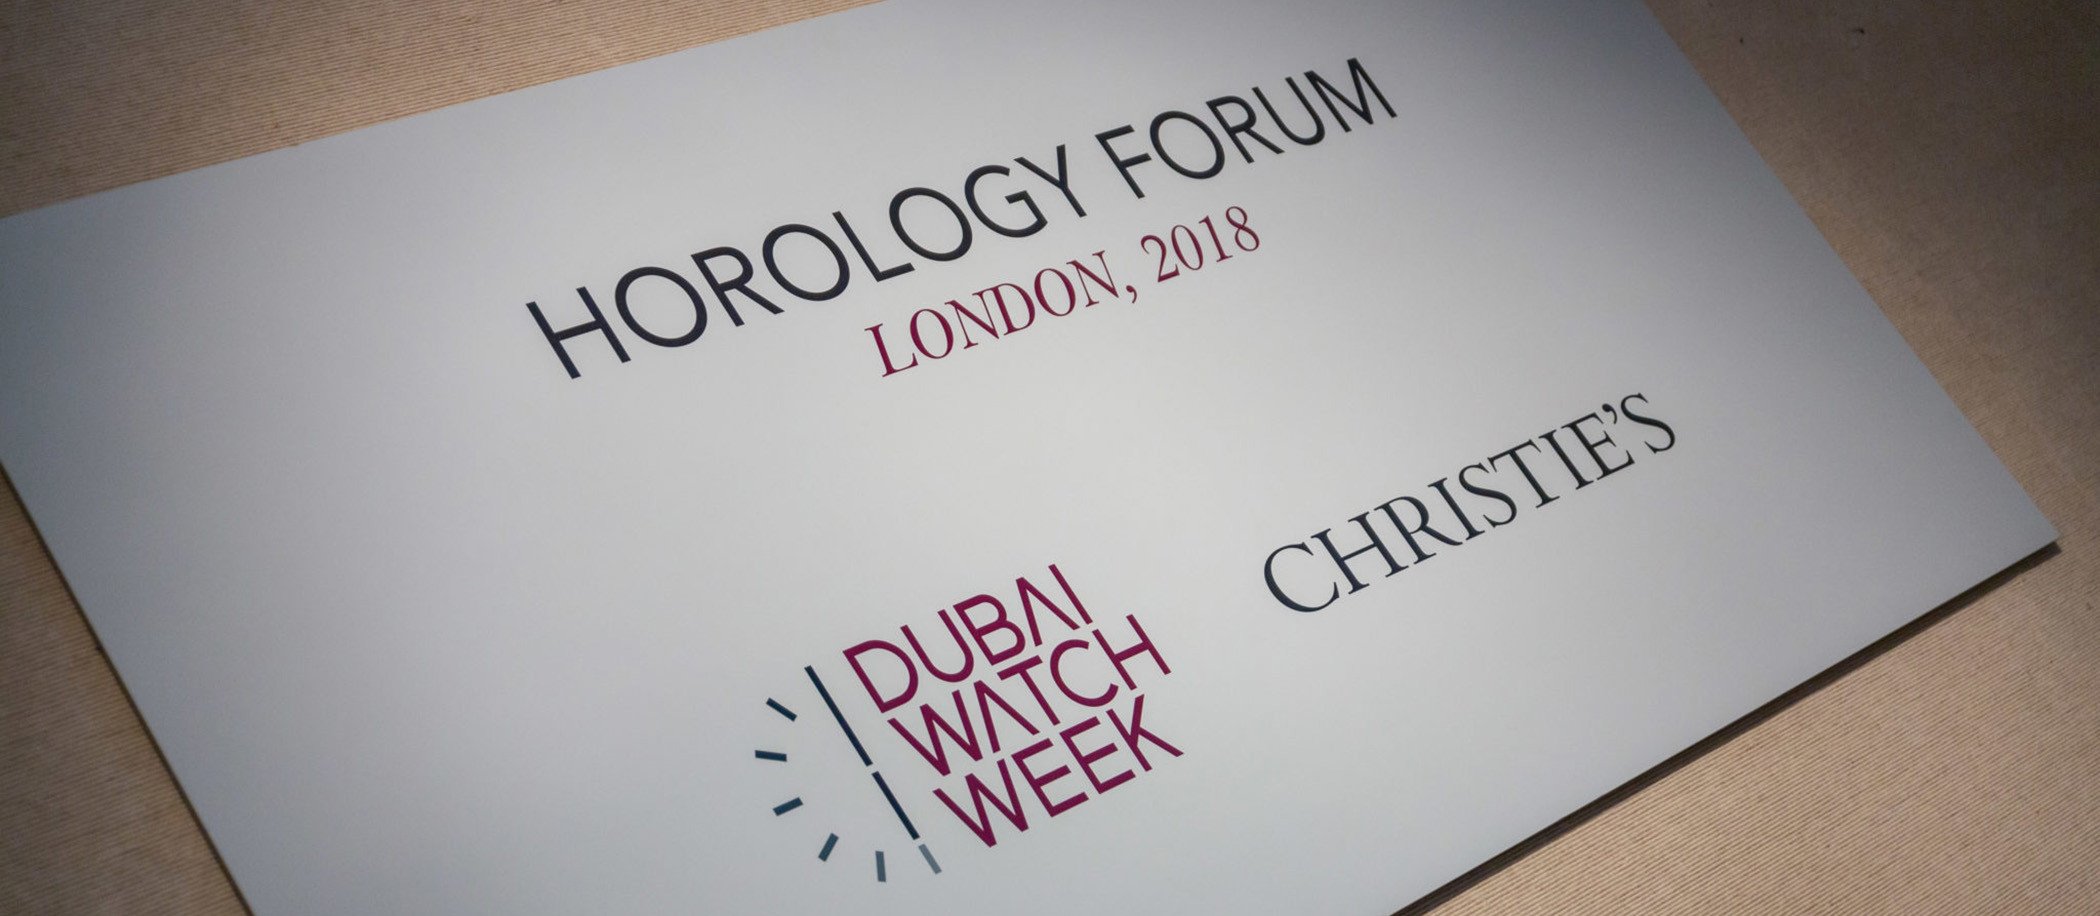 Horology Forum 2018 – Londyn